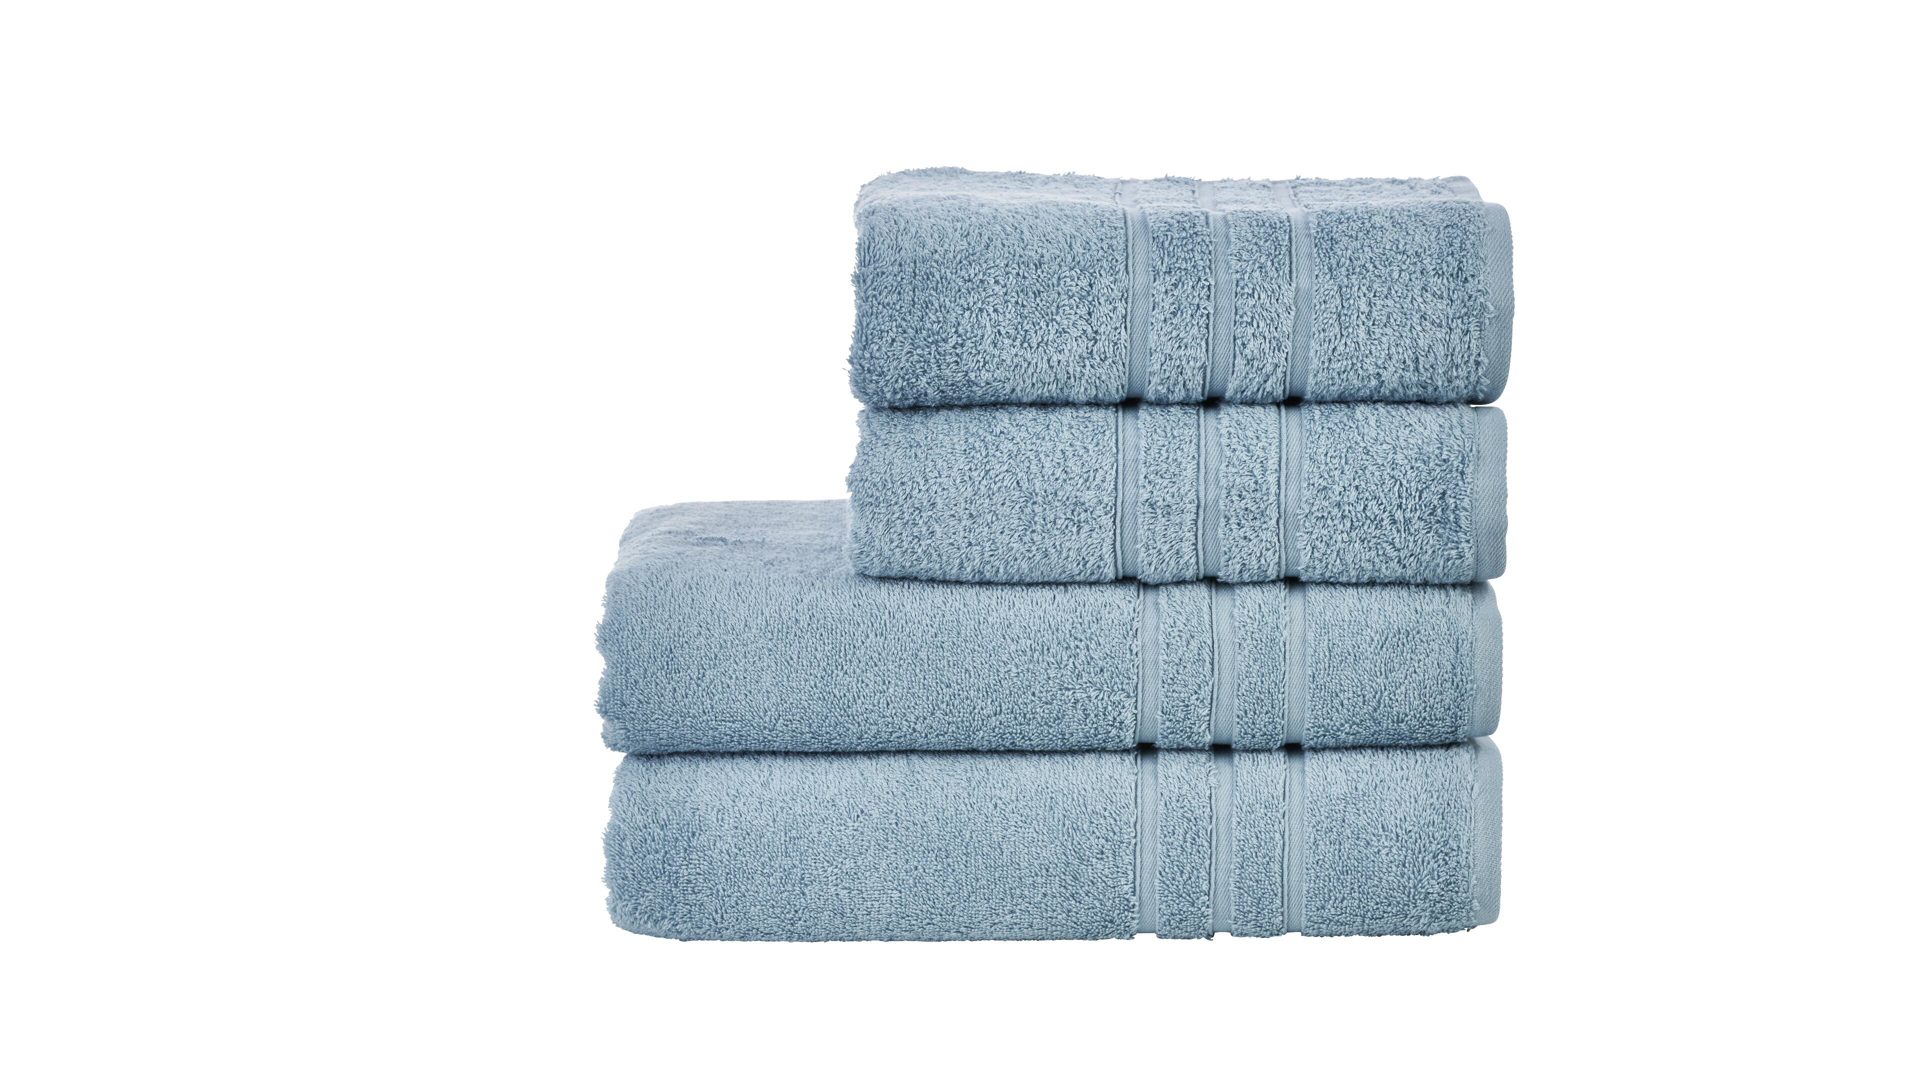 Handtuch-Set Done.® be different aus Stoff in Blau DONE.® Handtuch-Set Daily Uni oceanfarbene Baumwolle – vierteilig